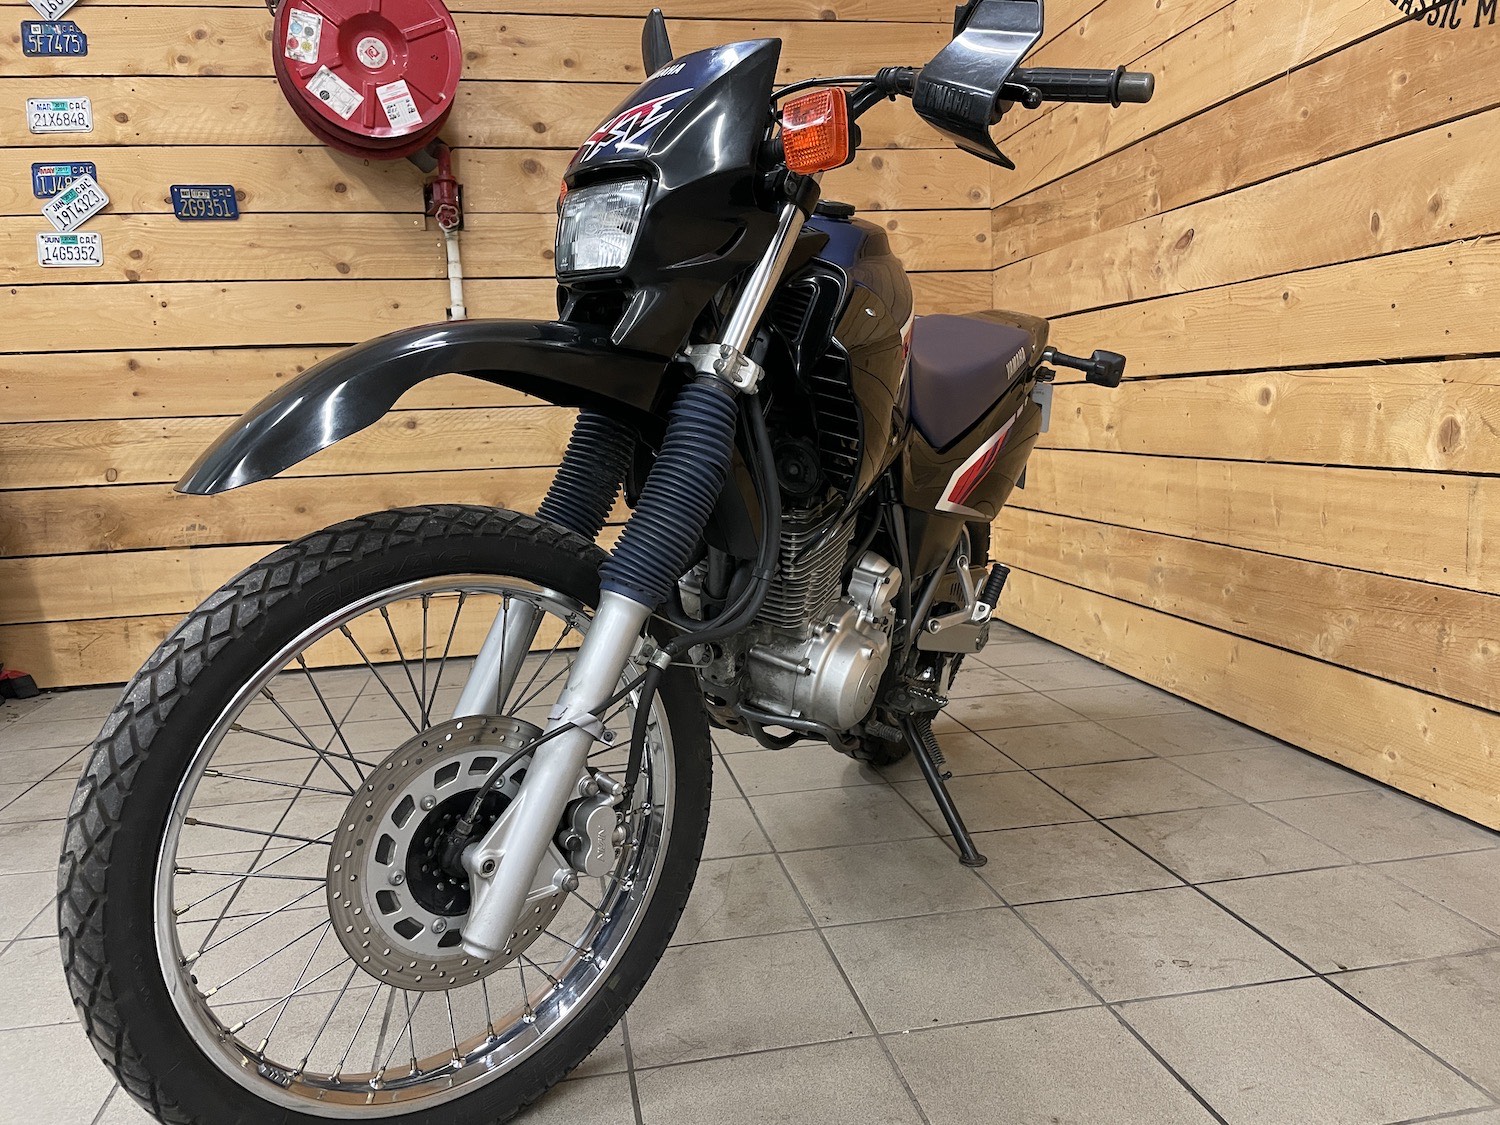 Yamaha_XT600_E_cezanne_classic_motorcycle_5-95.jpg